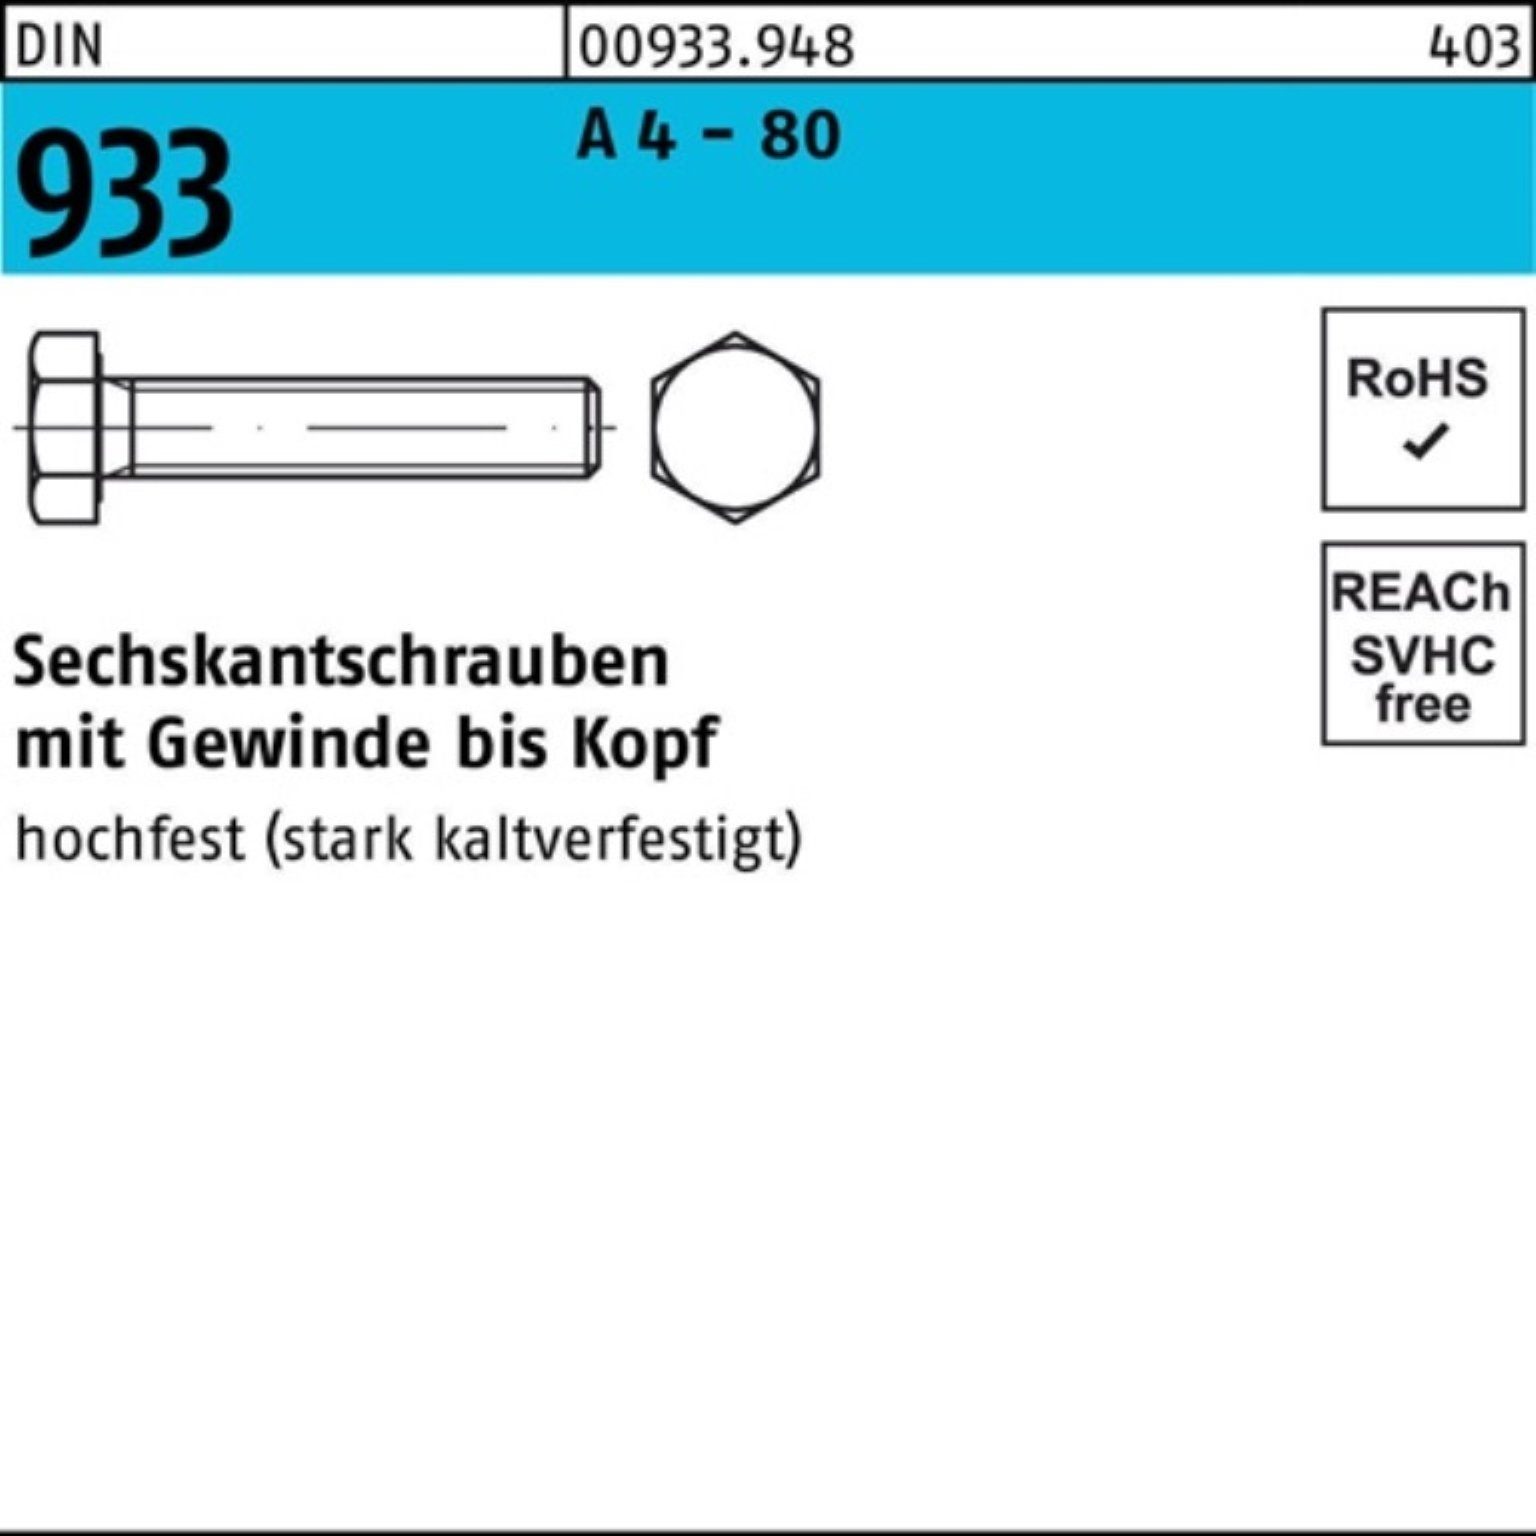 Reyher Sechskantschraube 100er Pack Sechskantschraube DIN 933 VG M5x 70 A 4 - 80 100 Stück DIN